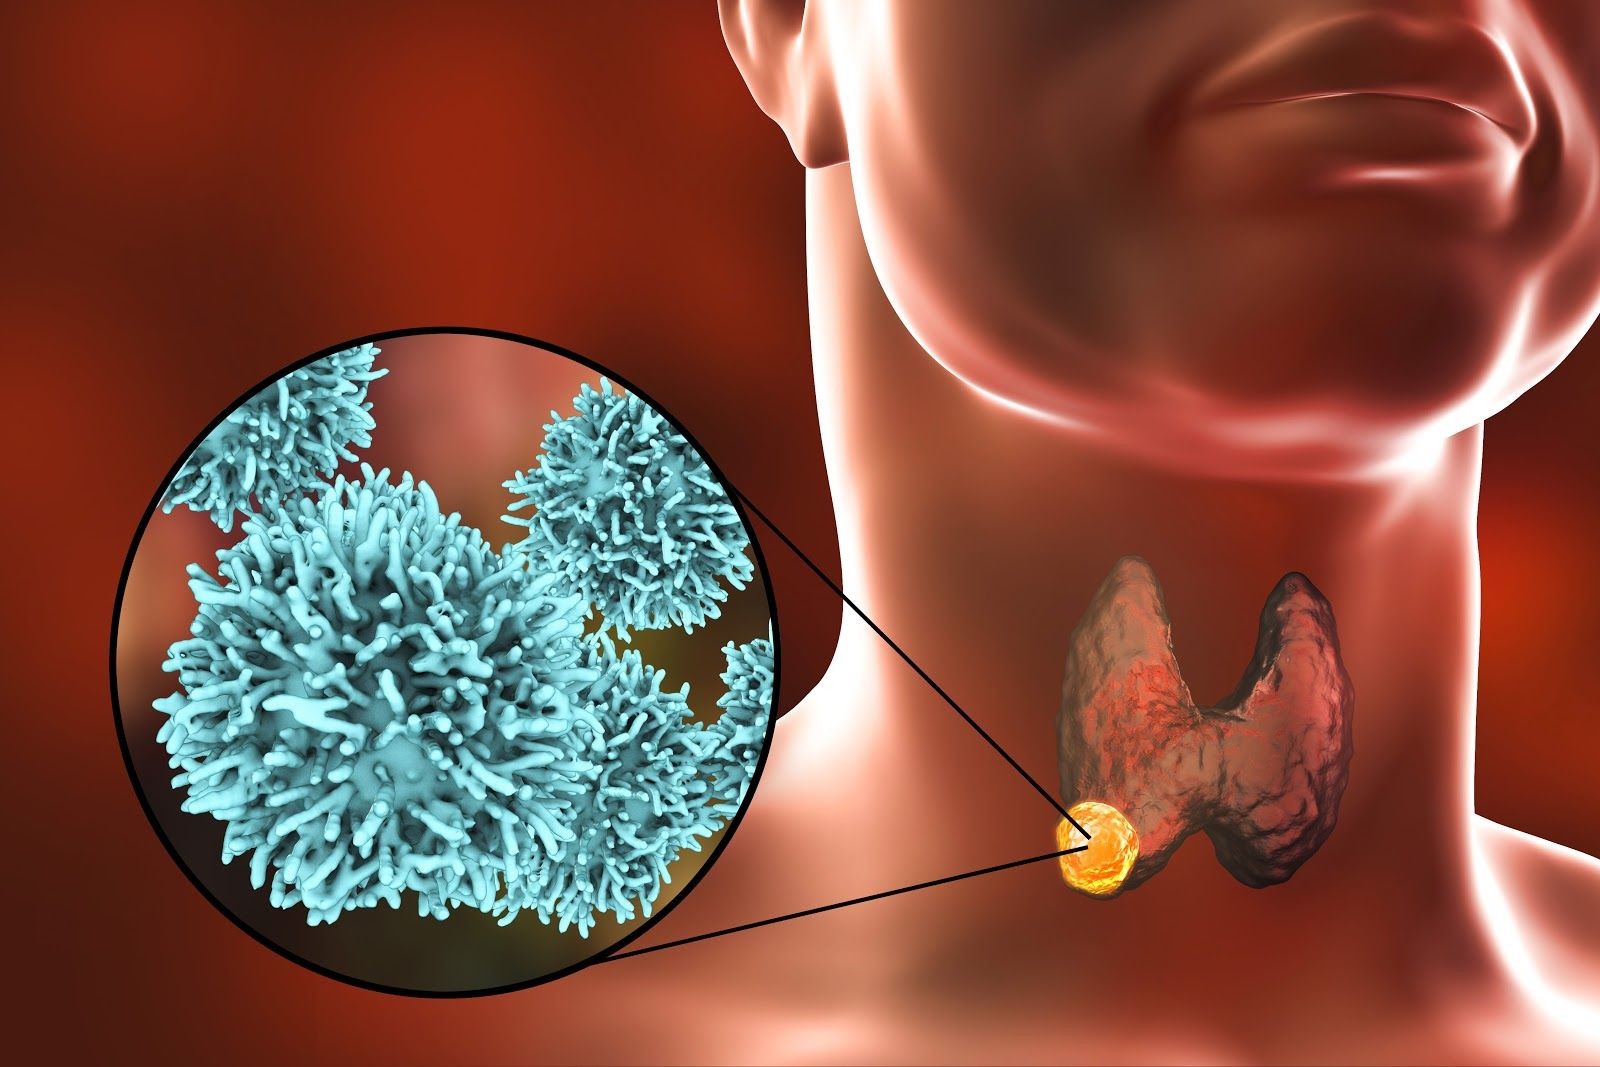 Ung thư tuyến giáp xảy ra khi các tế bào tuyến giáp tăng sinh vượt kiểm soát tạo thành khối u